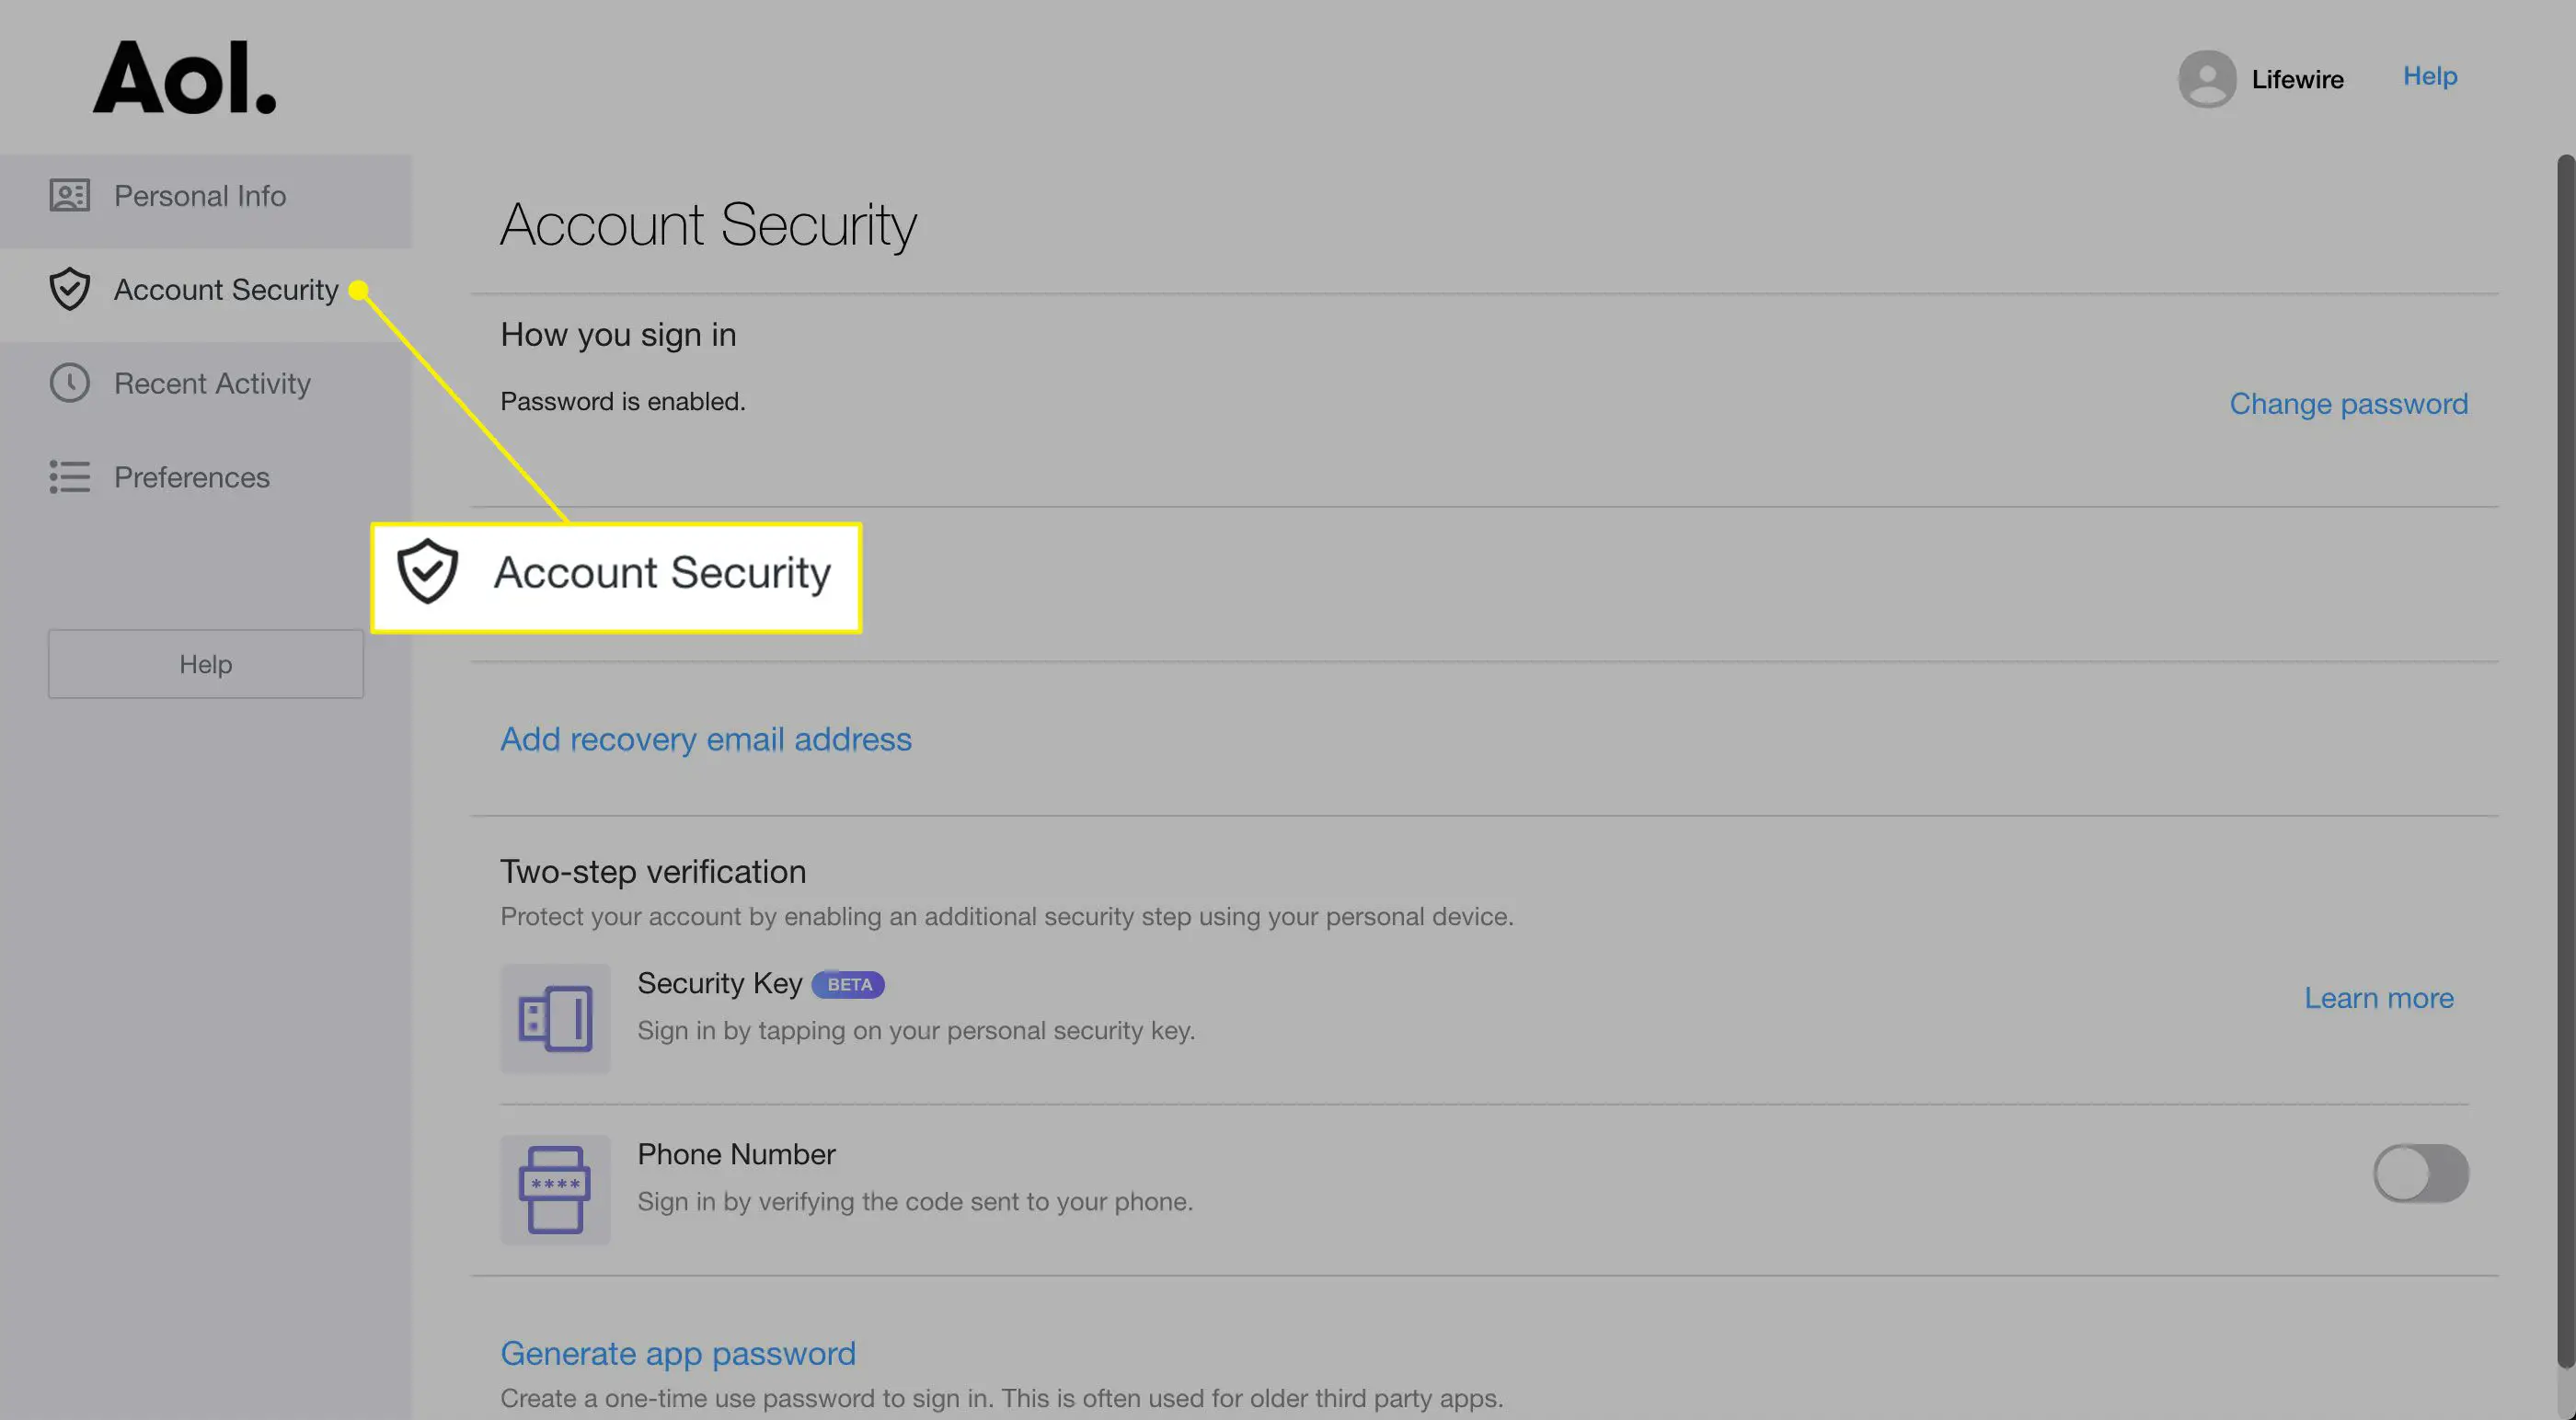 Título de segurança da conta nas configurações do AOL